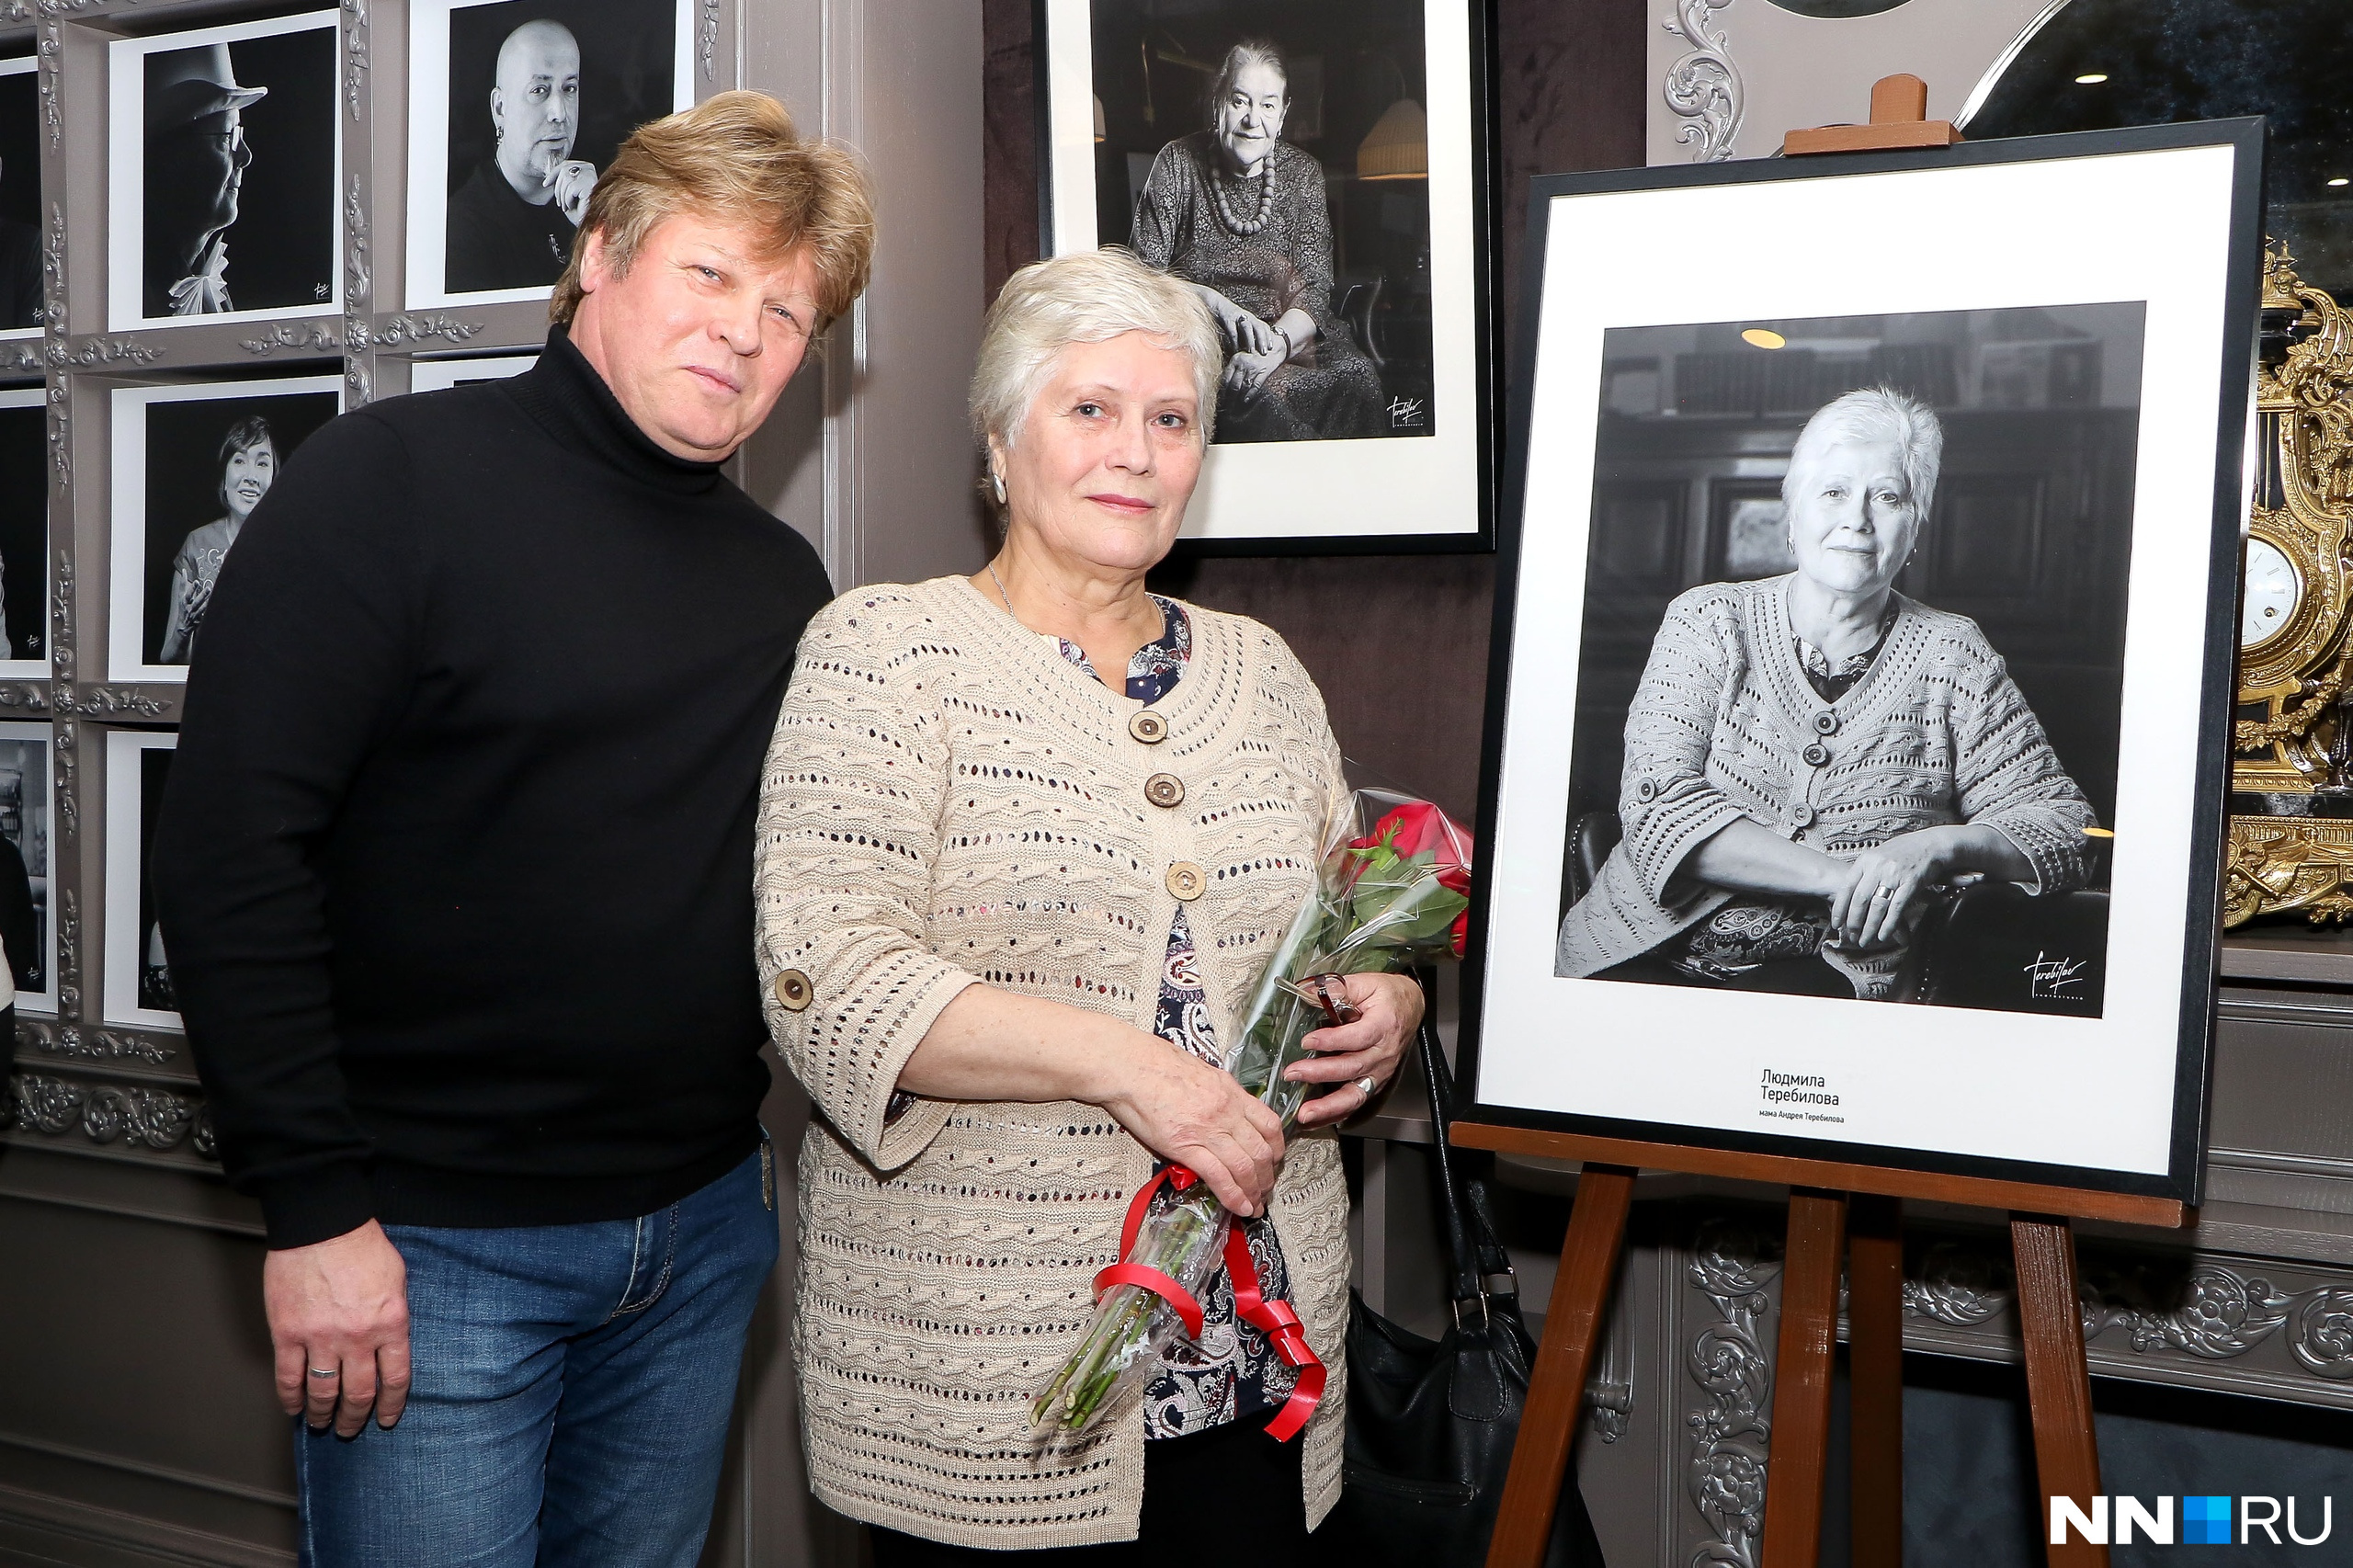 Главное фото на выставке Андрея Теребилова — портрет его мамы